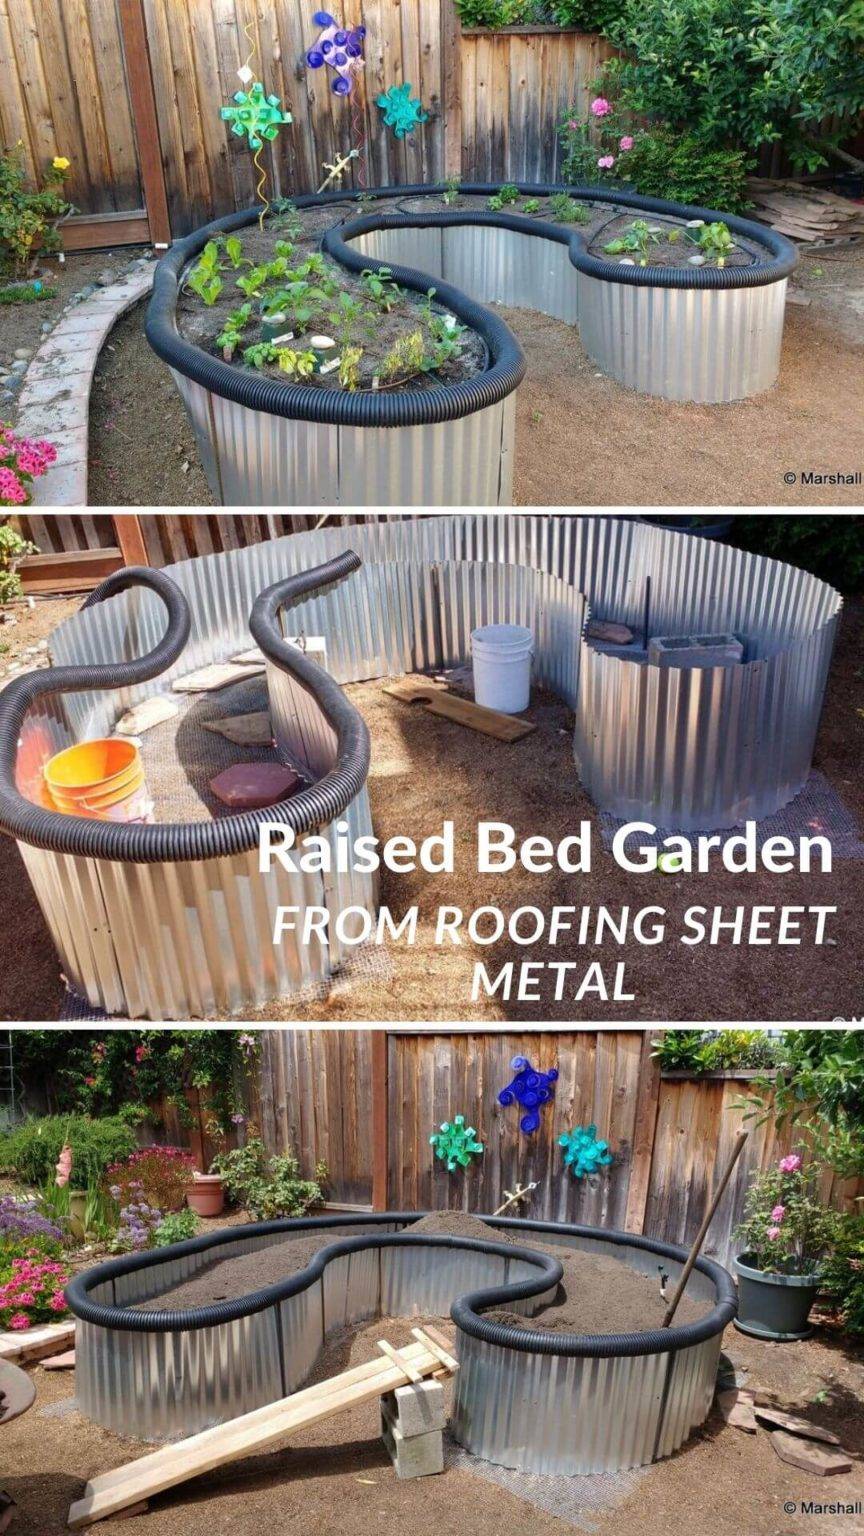 Best Diy Raised Garden Bed Ideas